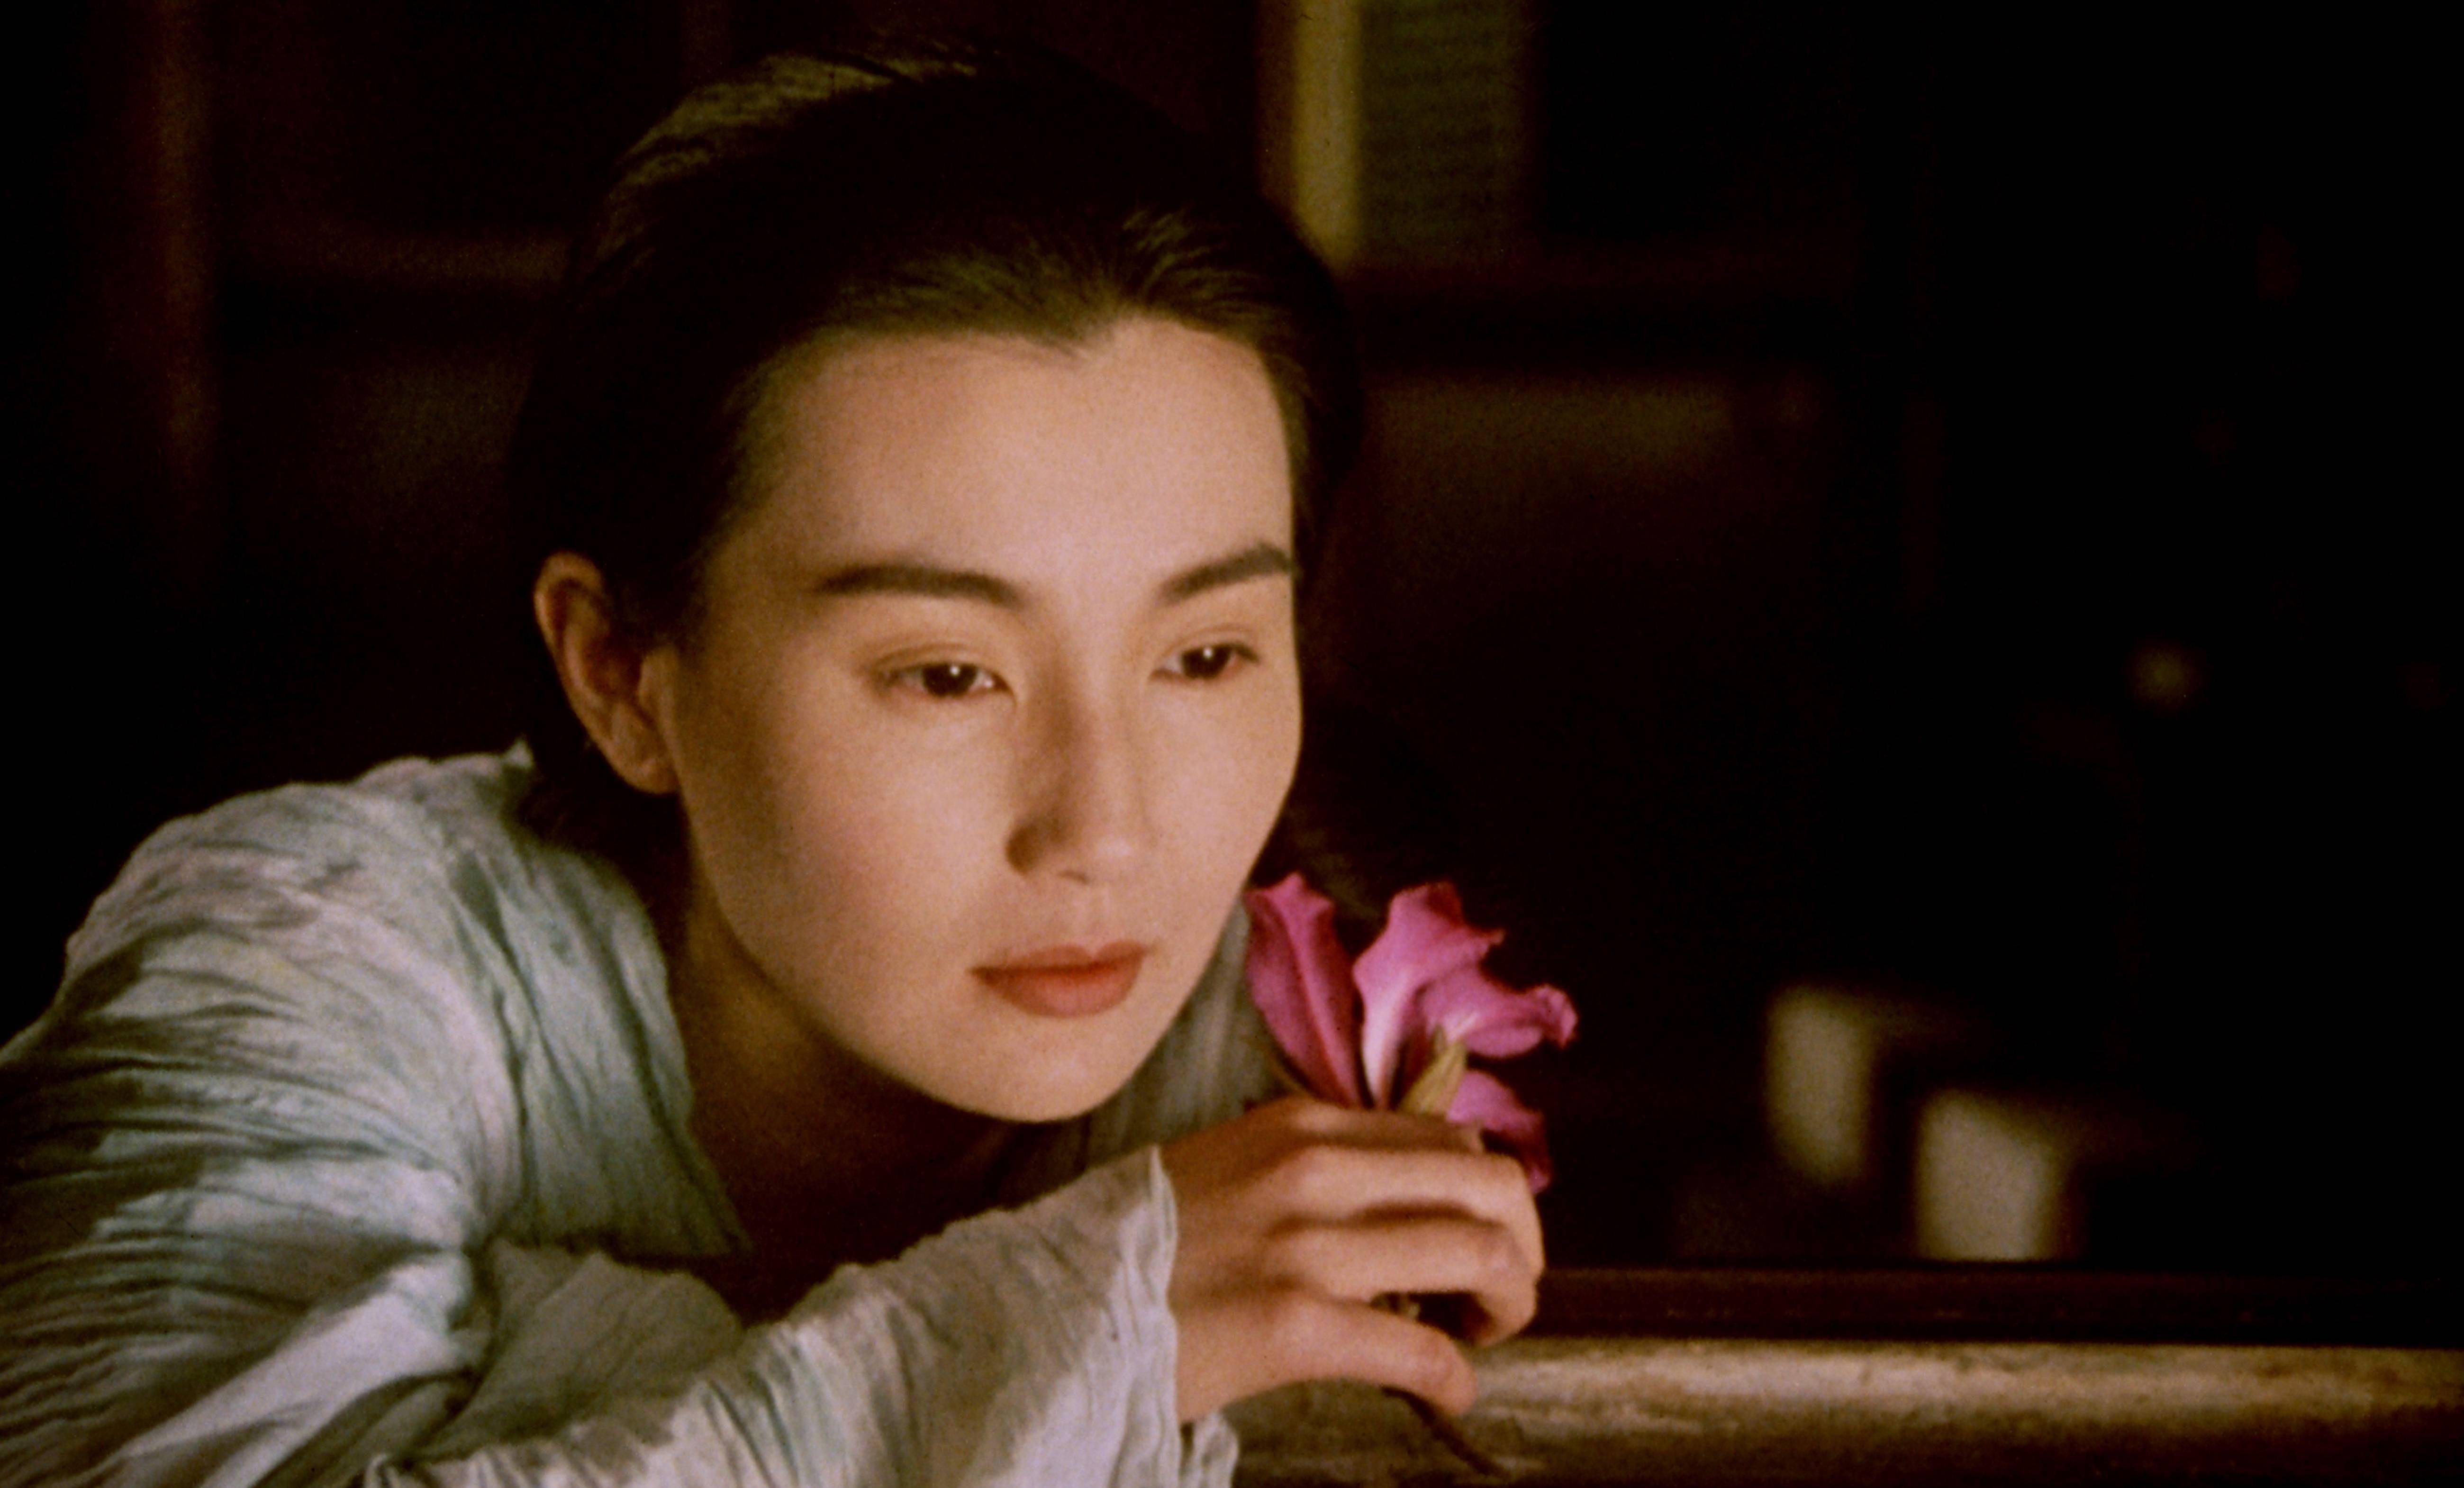 张曼玉评分最高的6部影片:《青蛇》排名第5,第一名至今未被超越